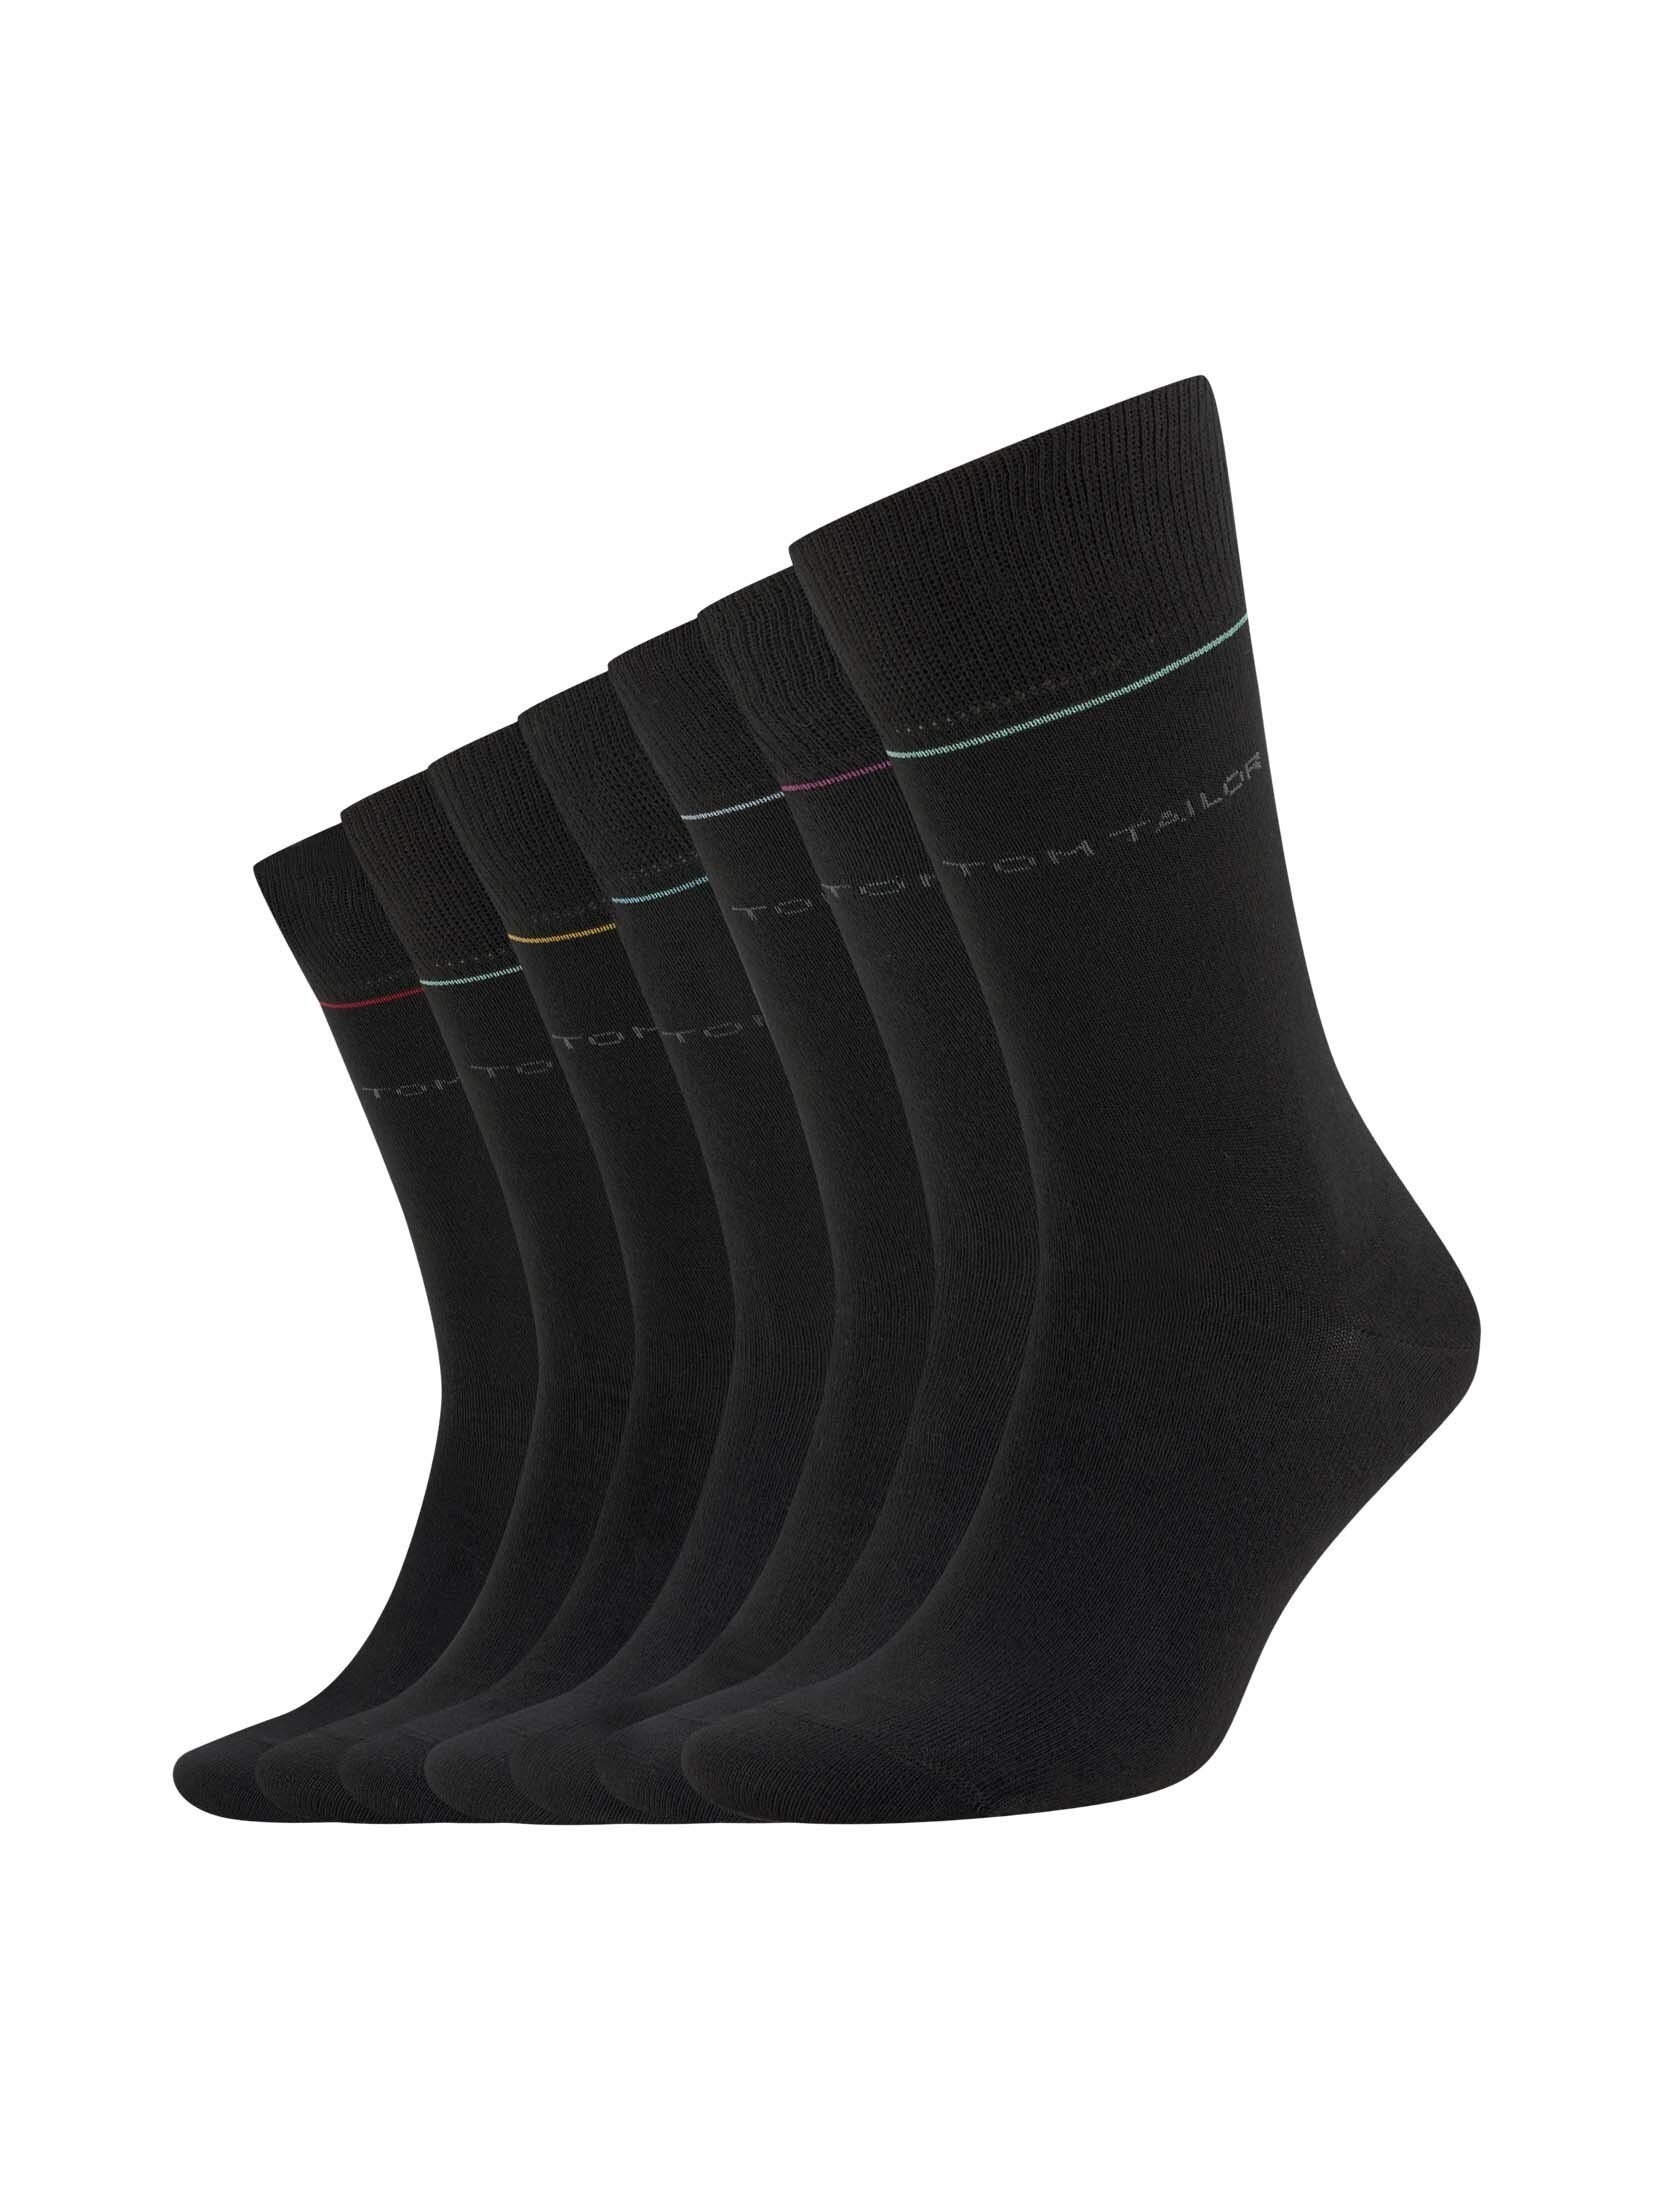 TOM TAILOR Socken Socken in einer 7-Tage-Box (im Siebenerpack) black